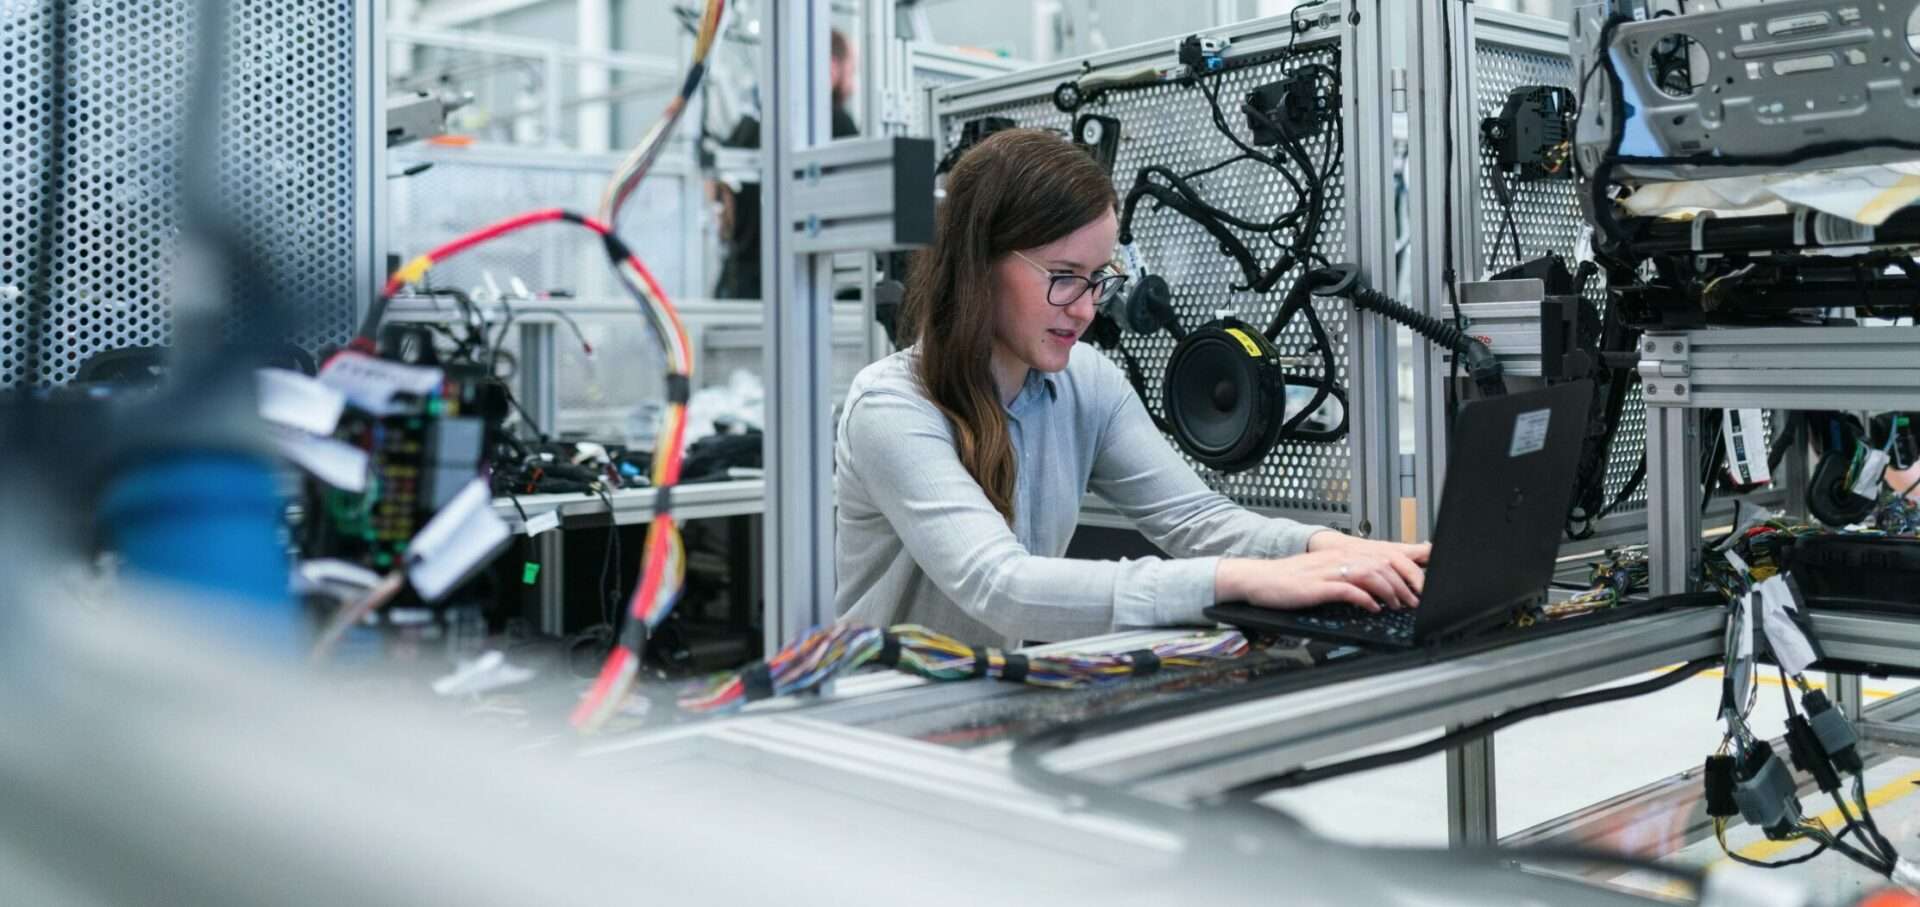 Una mujer trabaja en su ordenador en un espacio de trabajo industrial